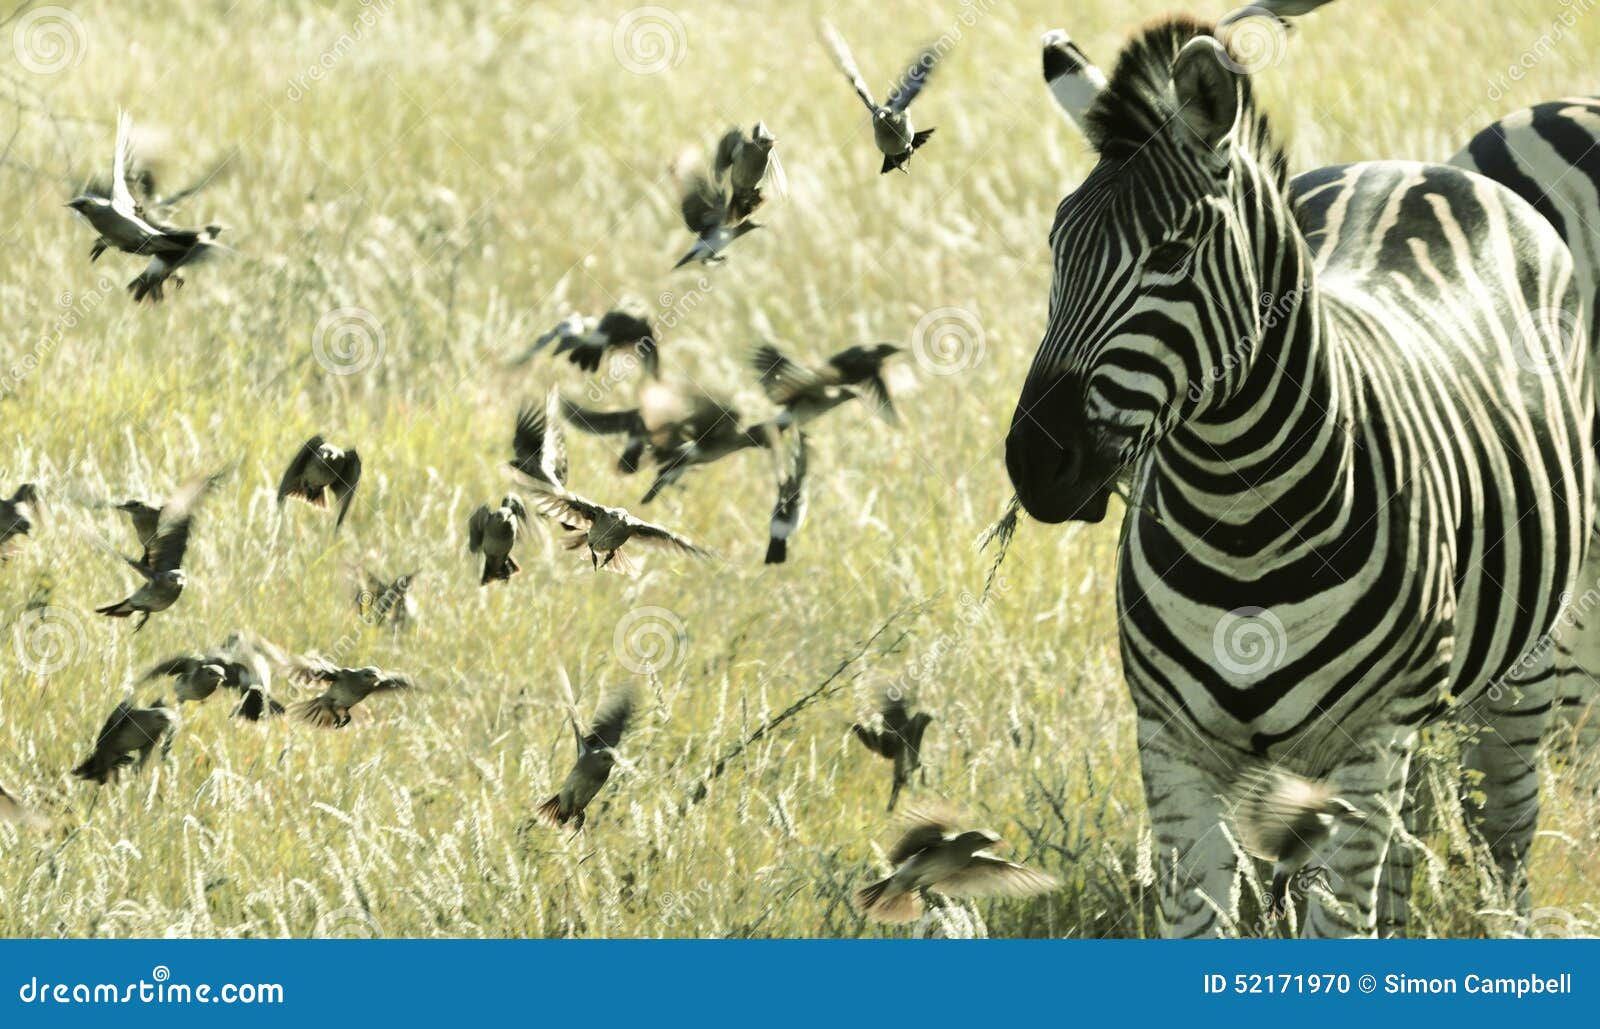 Zèbre parmi de petits oiseaux de vol, parc national Afrique du Sud de Kruger. Le zèbre mâche l'herbe au coucher du soleil, parc national Afrique du Sud de Kruger